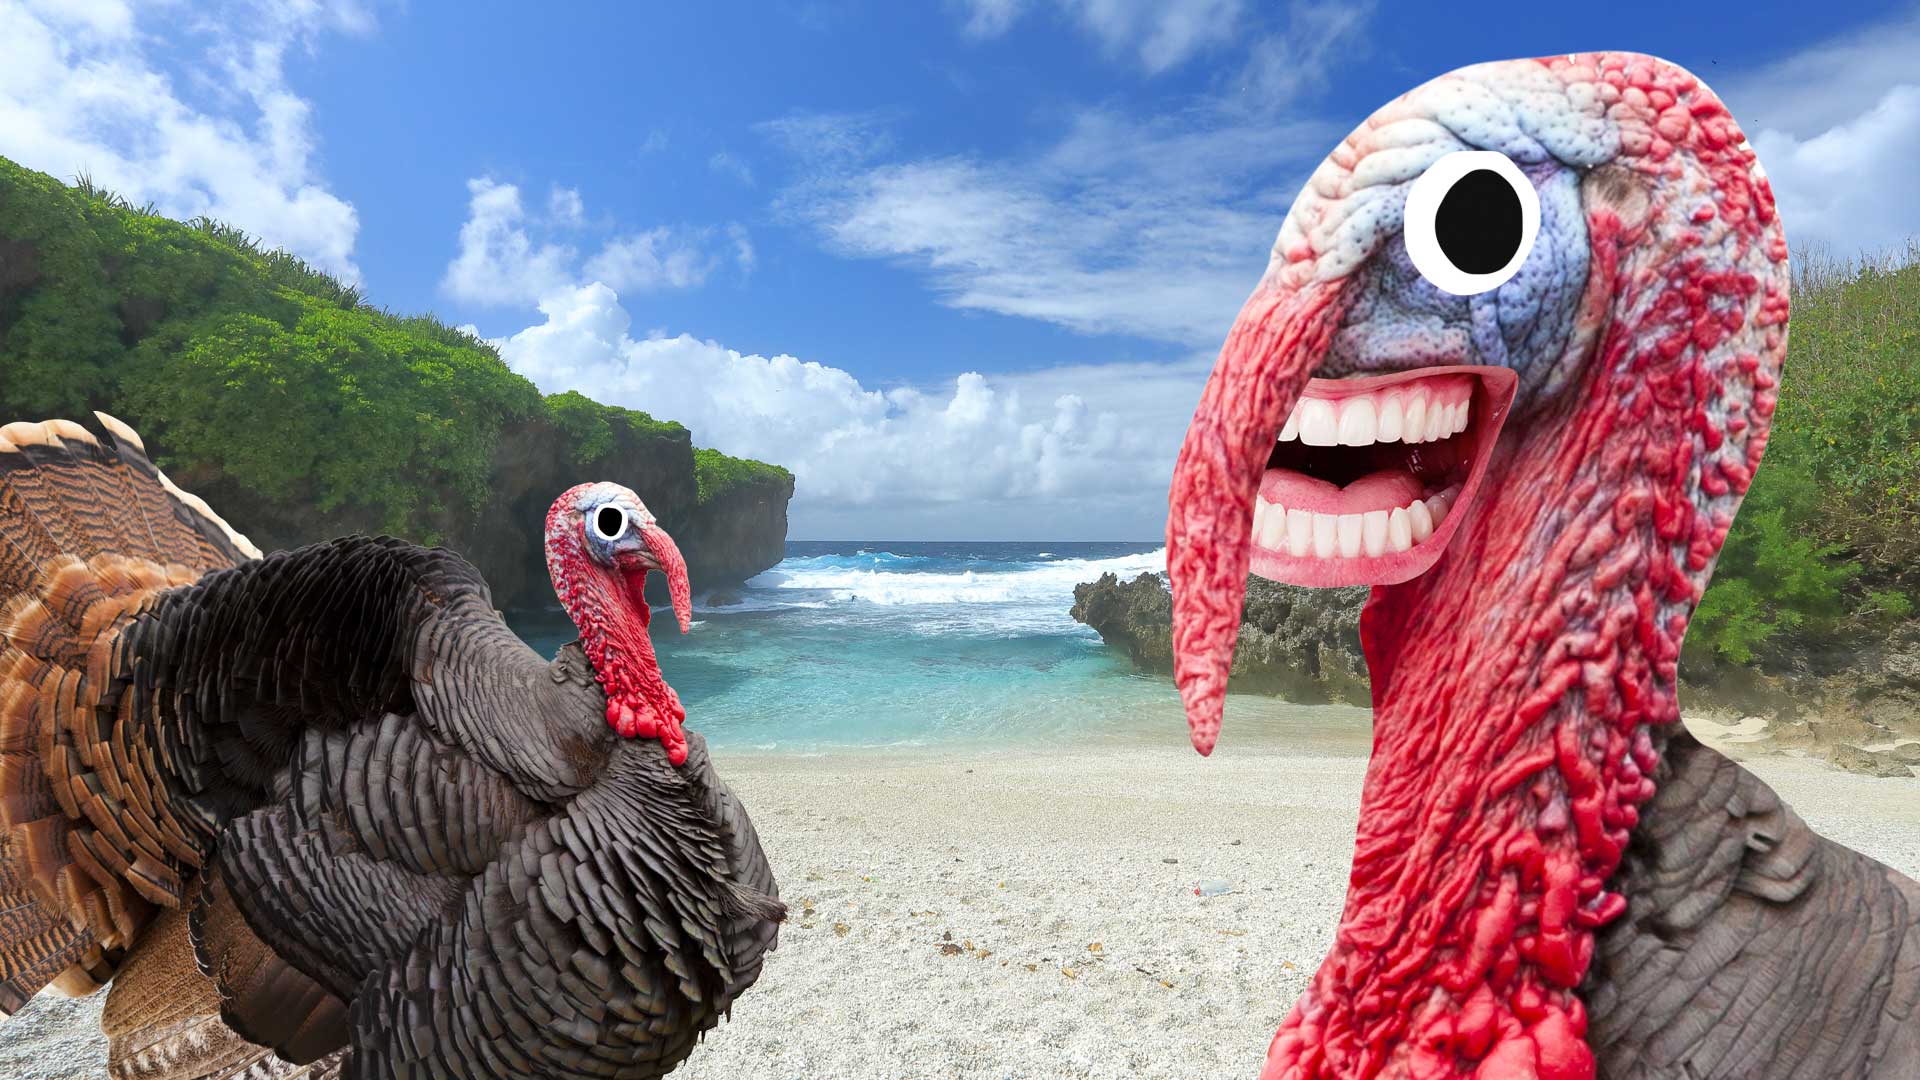 Turkeys on Christmas Island